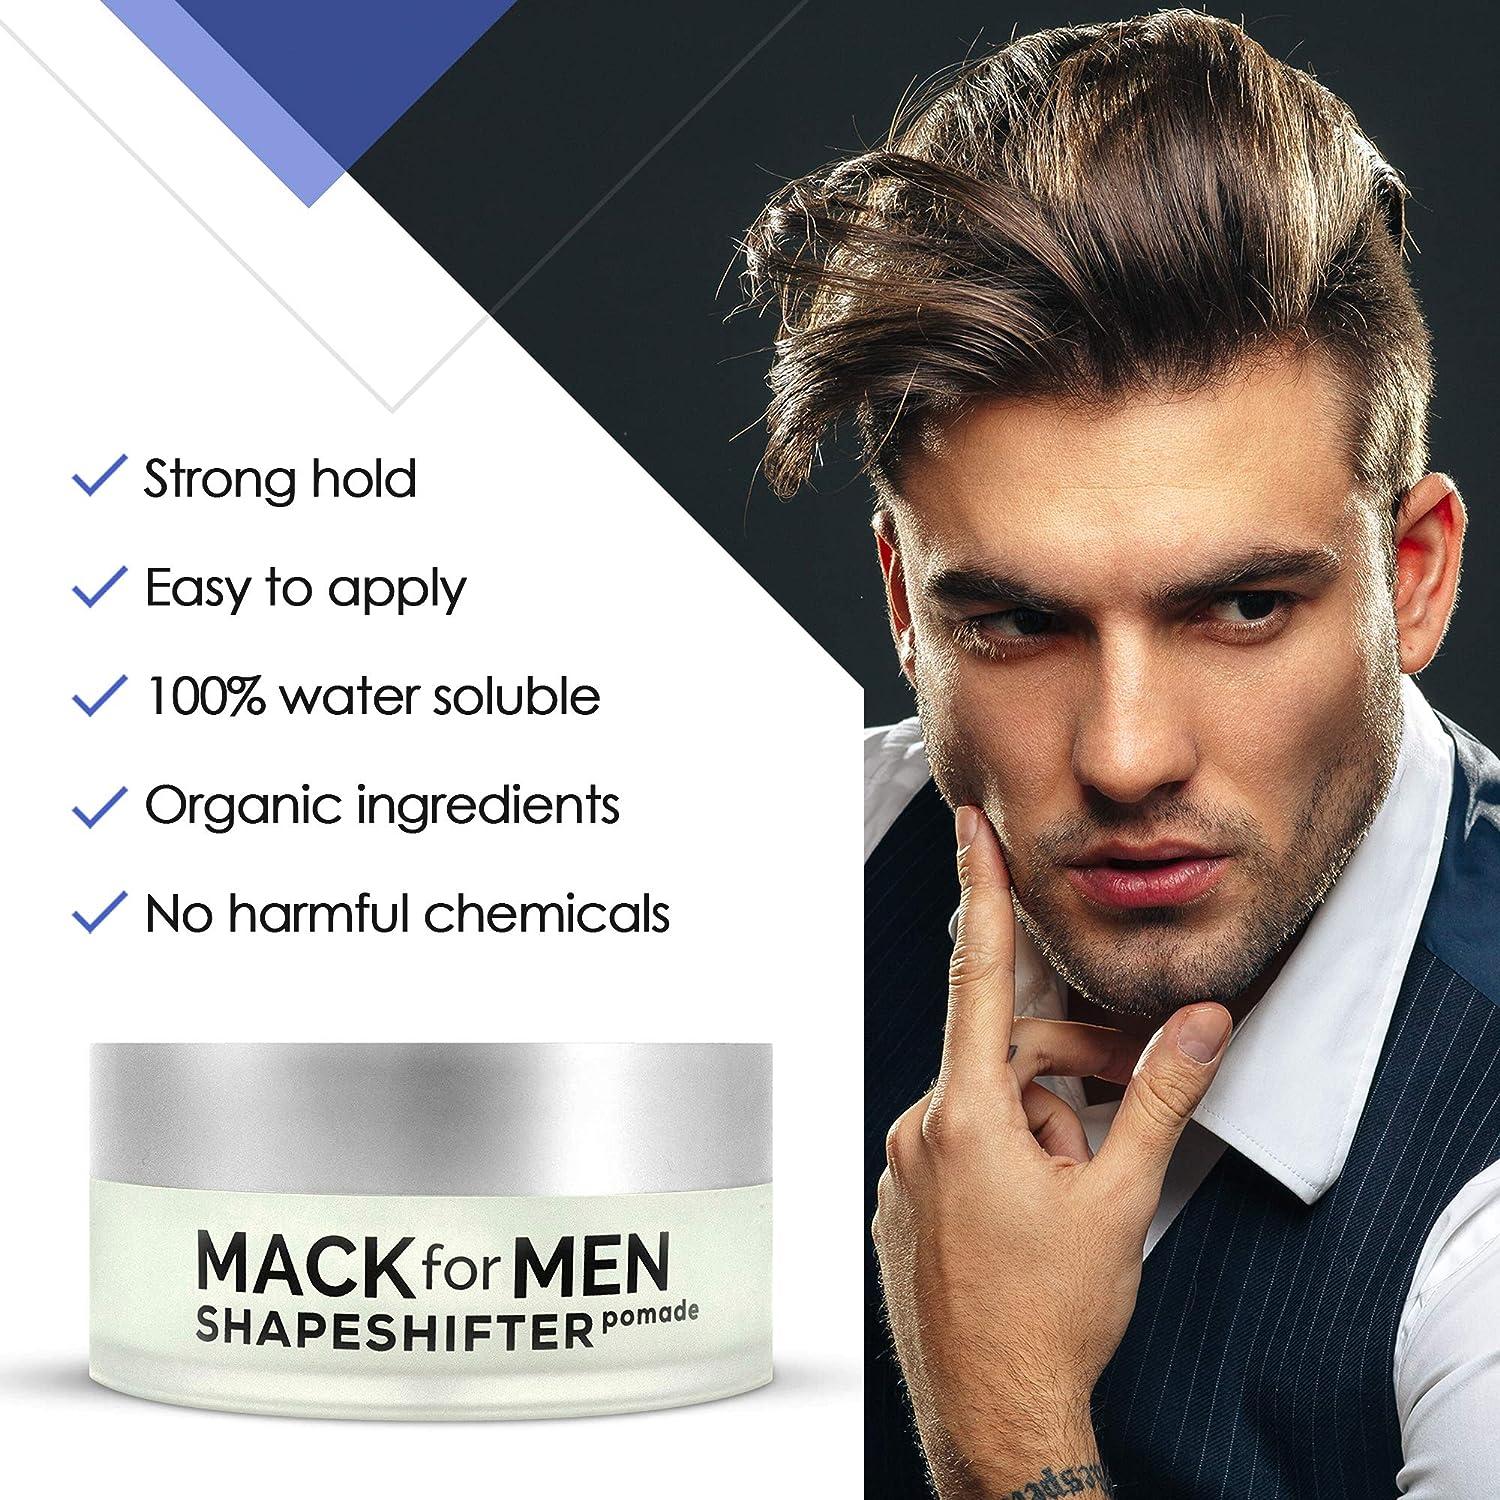 Mack for Men ShapeShifter Premium Hair Pomade for Men Strong Hold